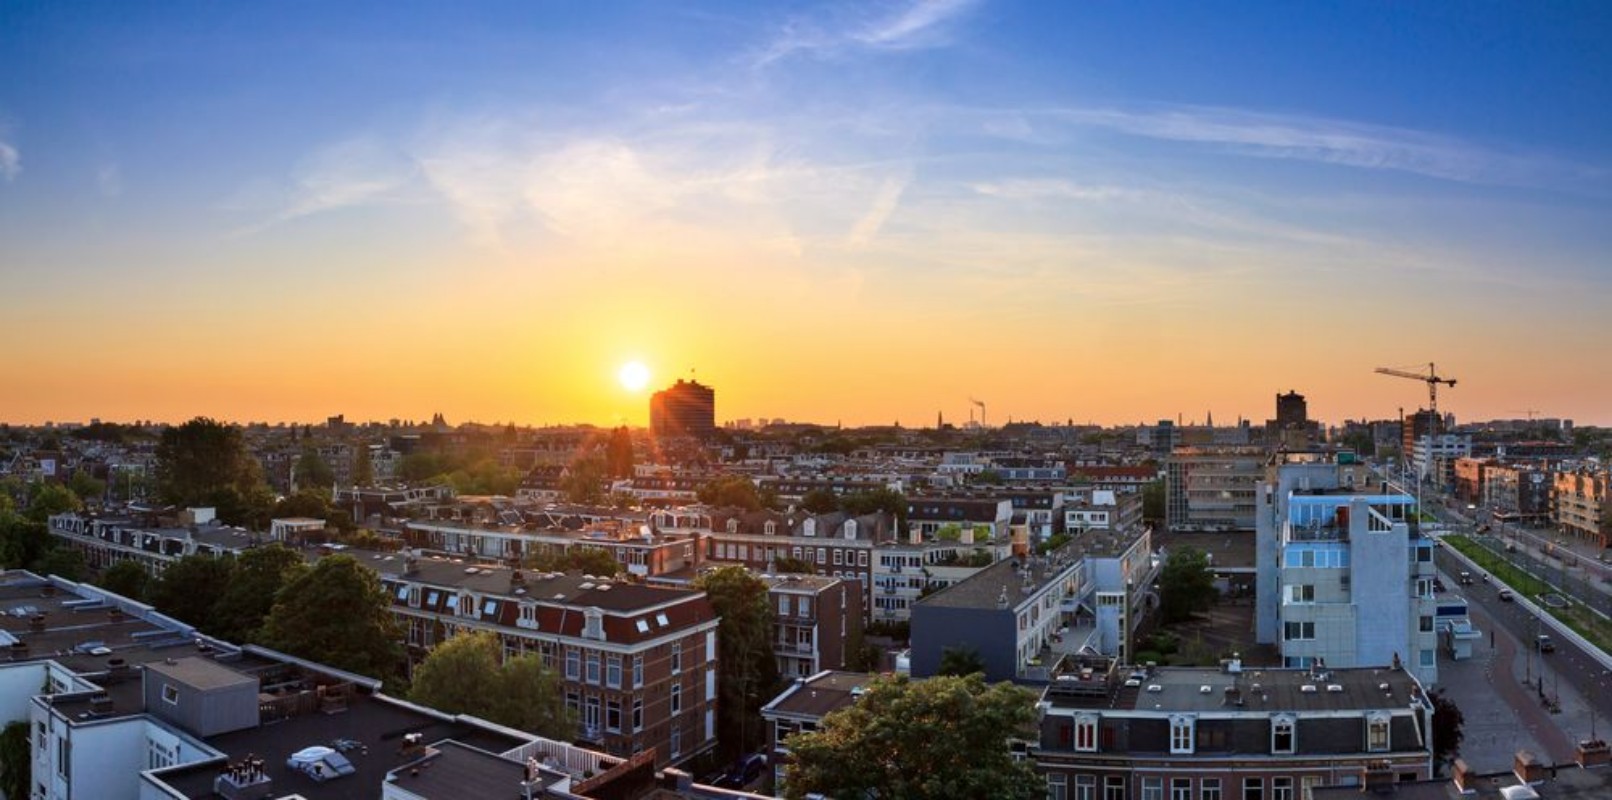 Afbeeldingen van Amsterdam cityscape sunset skyline